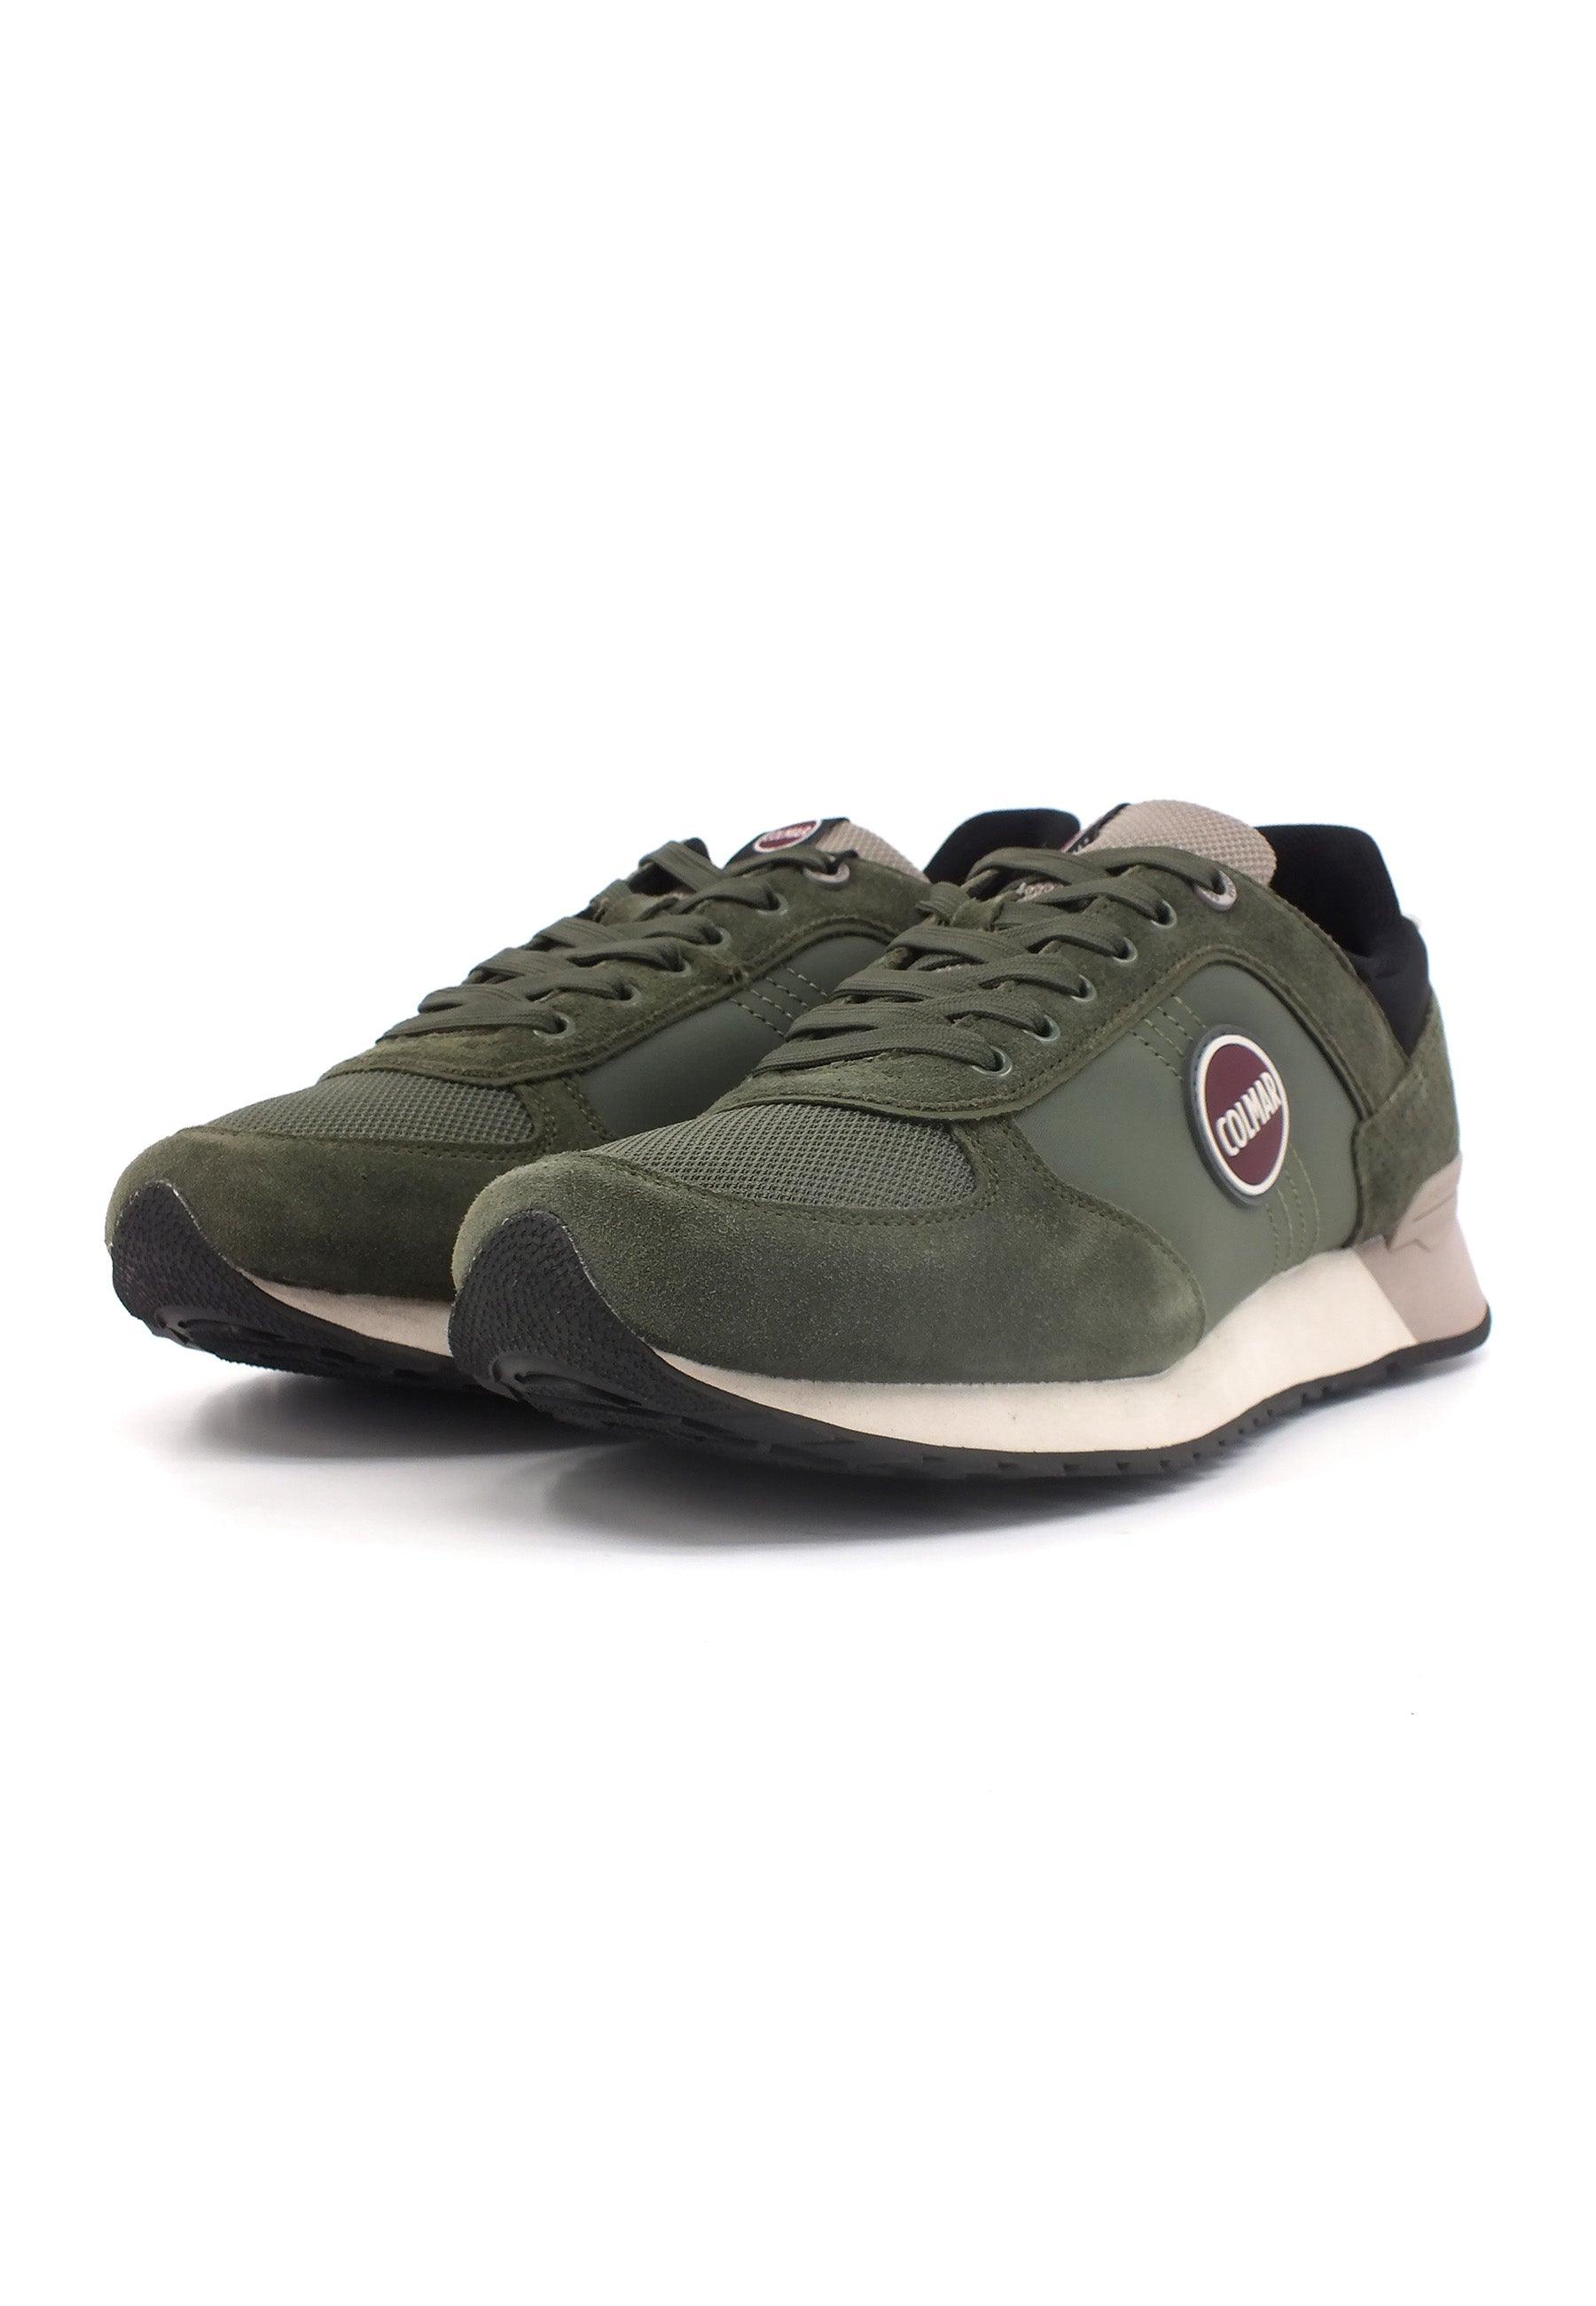 COLMAR Sneaker Uomo Military Green TRAVIS-AUTHENTIC - Sandrini Calzature e Abbigliamento